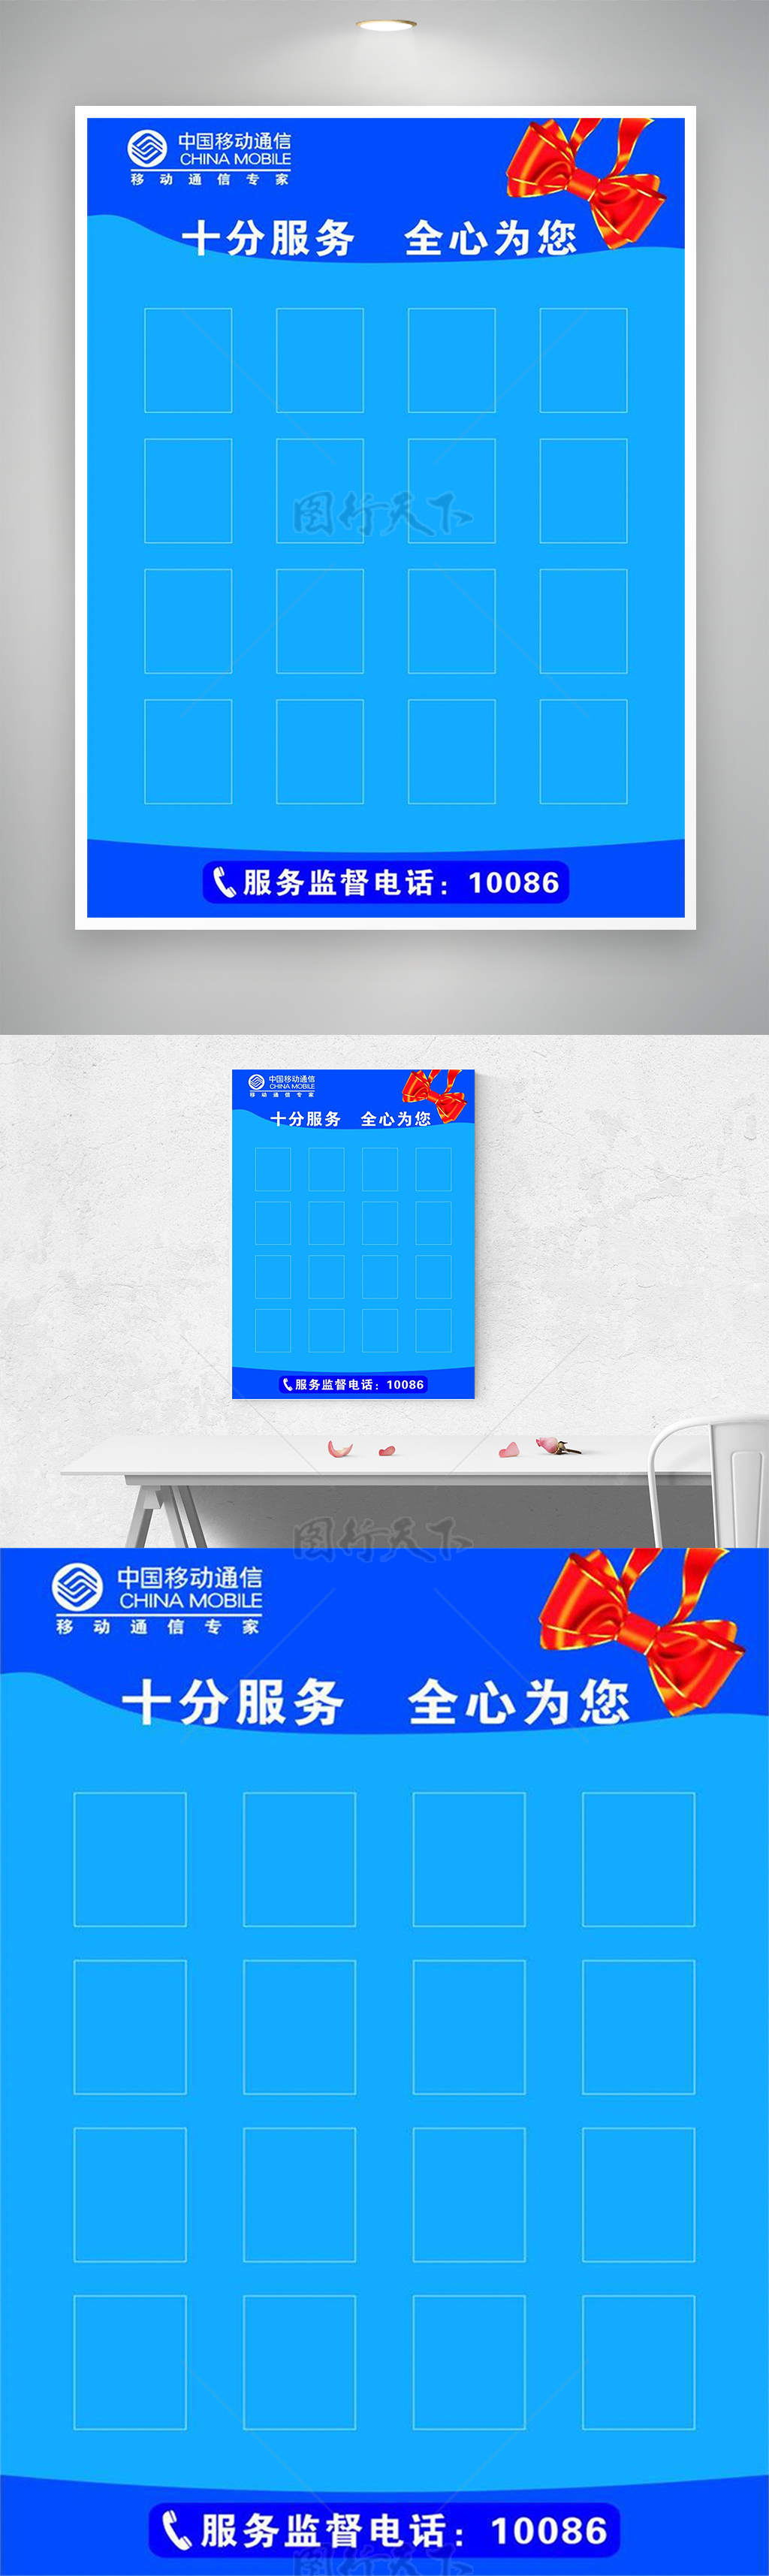 中国移动海报